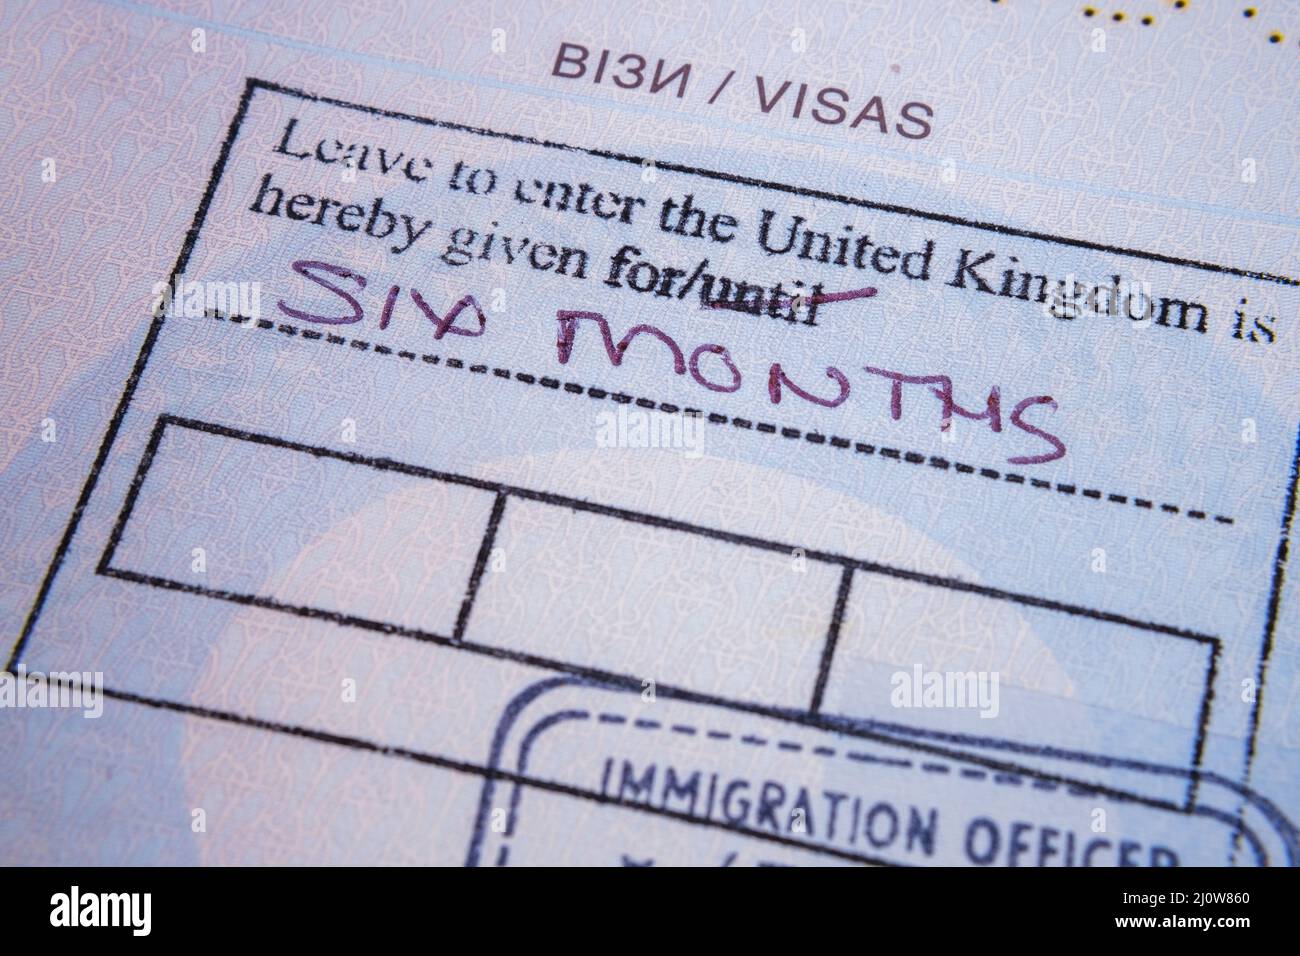 Visa britannique en passeport ukrainien pour le réfugié ukrainien, en raison de la guerre en Ukraine. Stafford, Royaume-Uni, 20 mars 2022 Banque D'Images